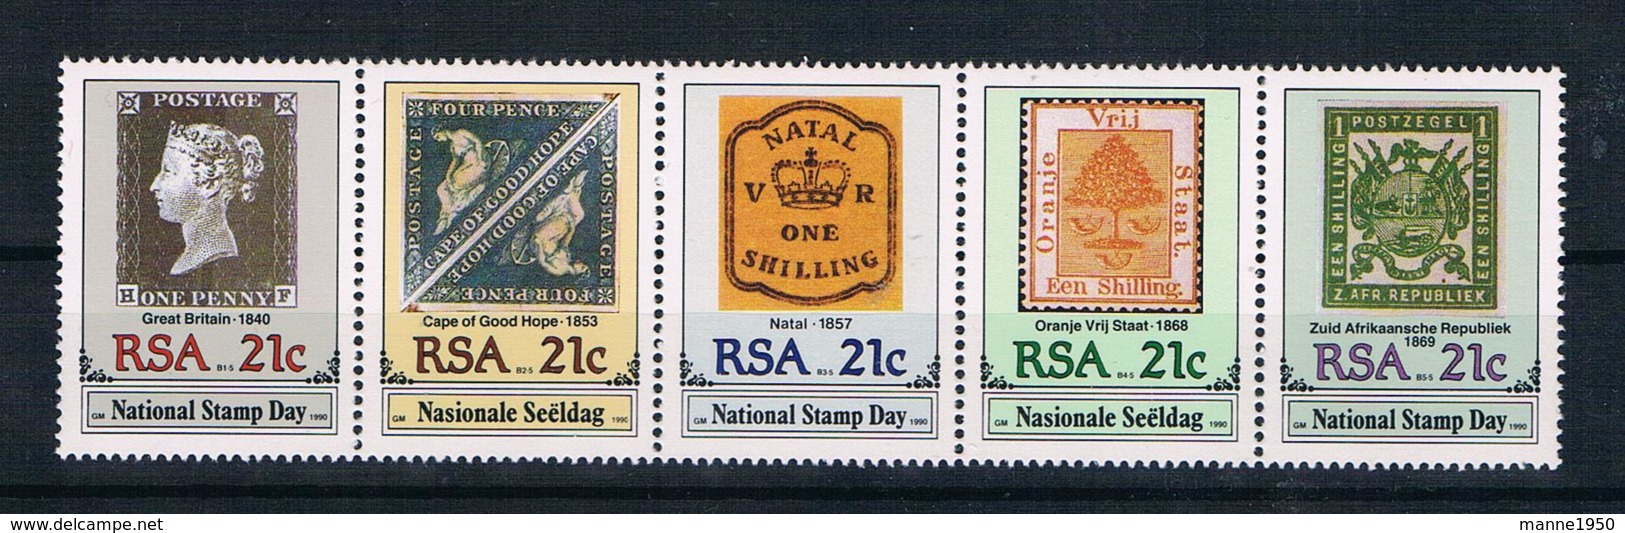 Südafrika 1990 Briefmarken Mi.Nr. 795/99 Kpl. Satz ** - Ungebraucht